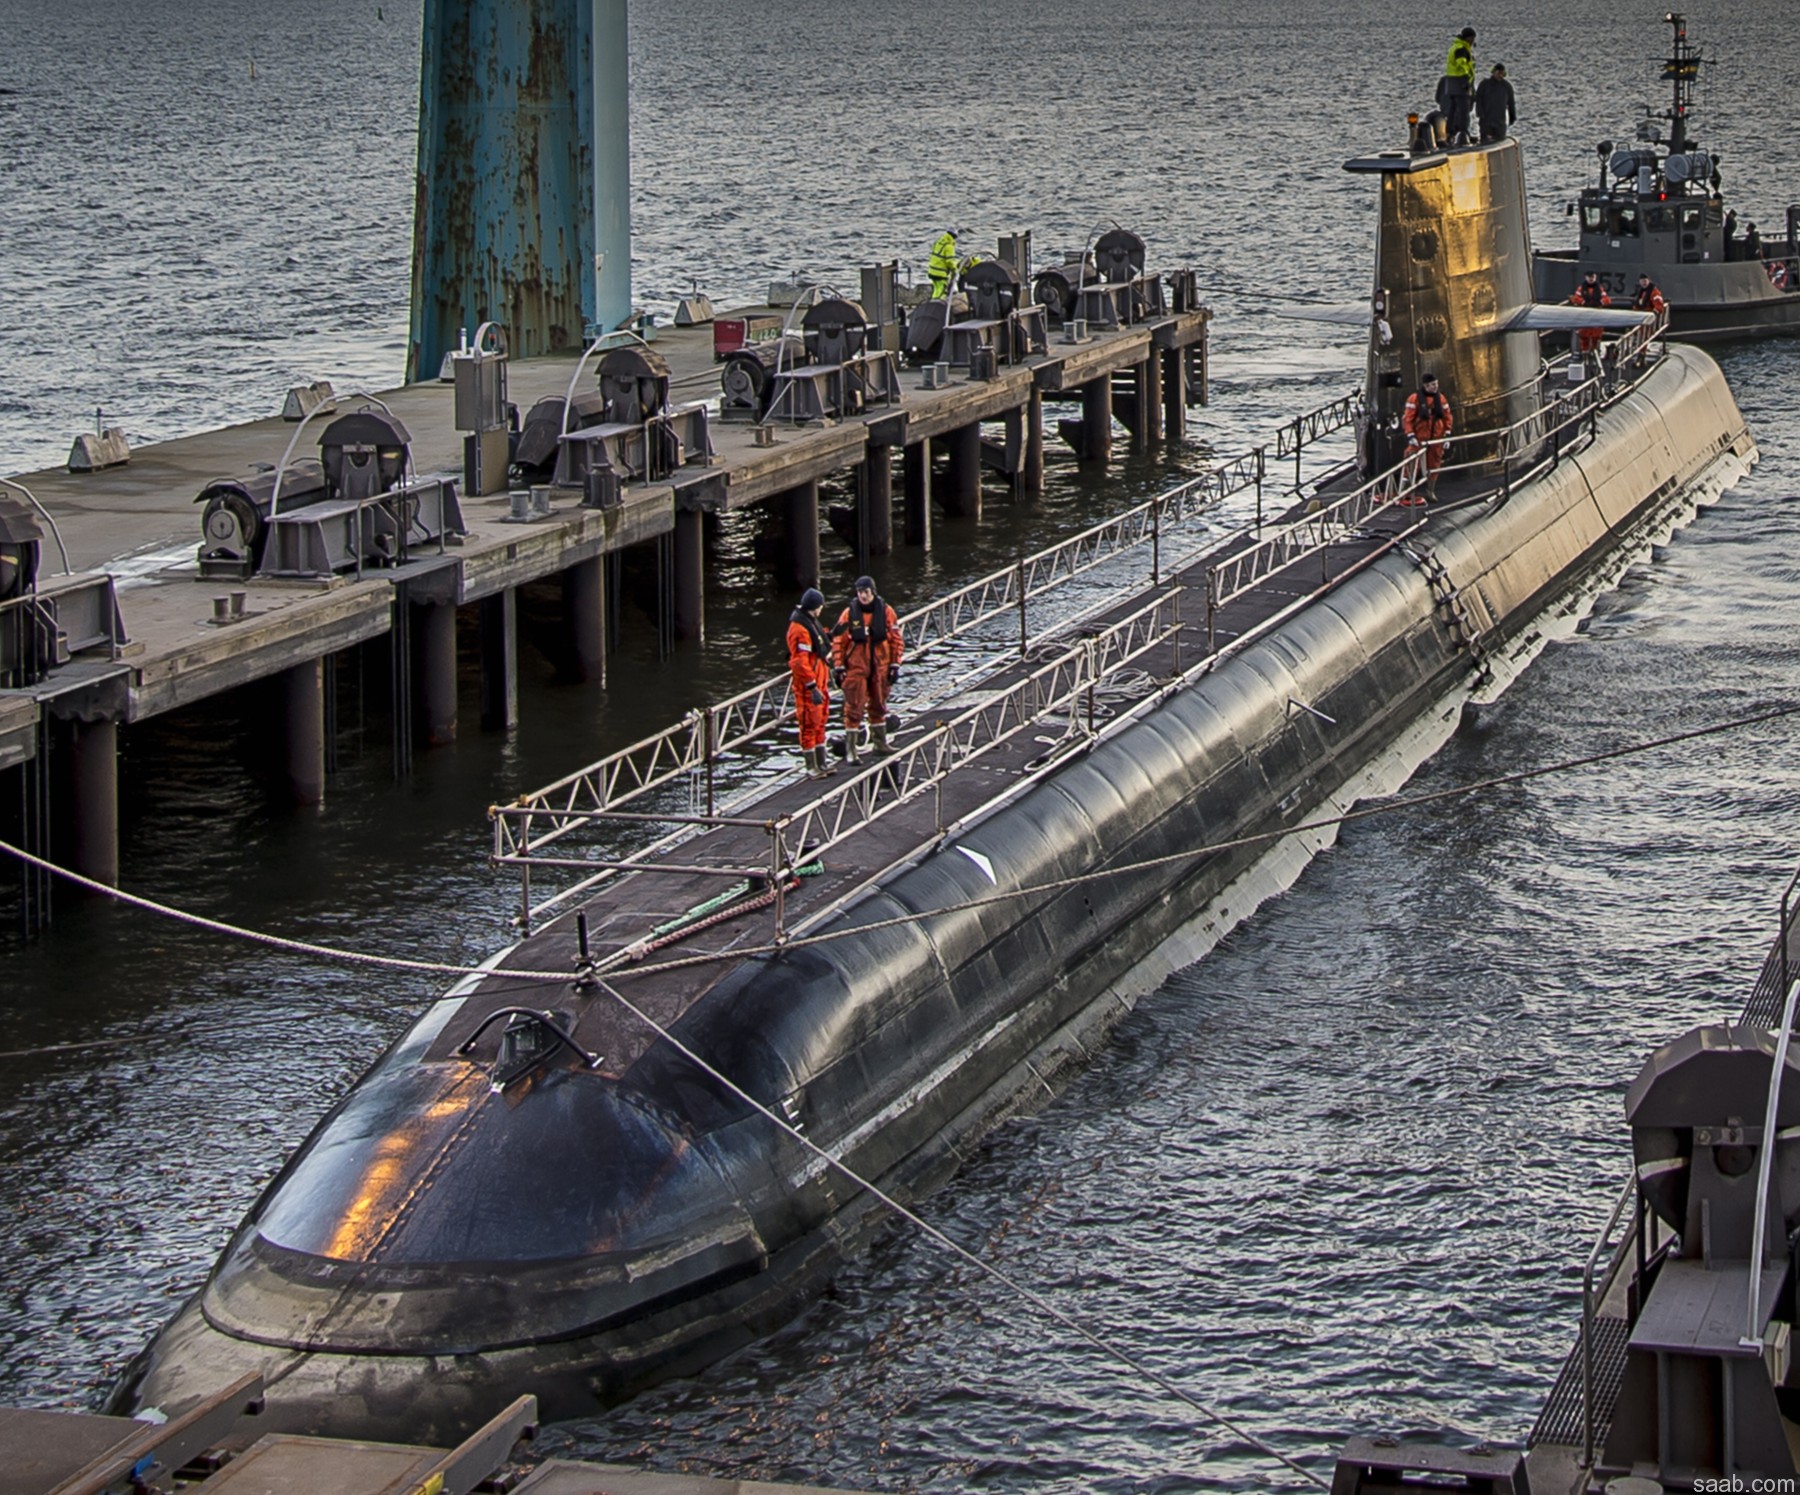 hswms hms gotland gtd class submarine ssk swedish navy svenska marinen försvarsmakten kockums saab 18